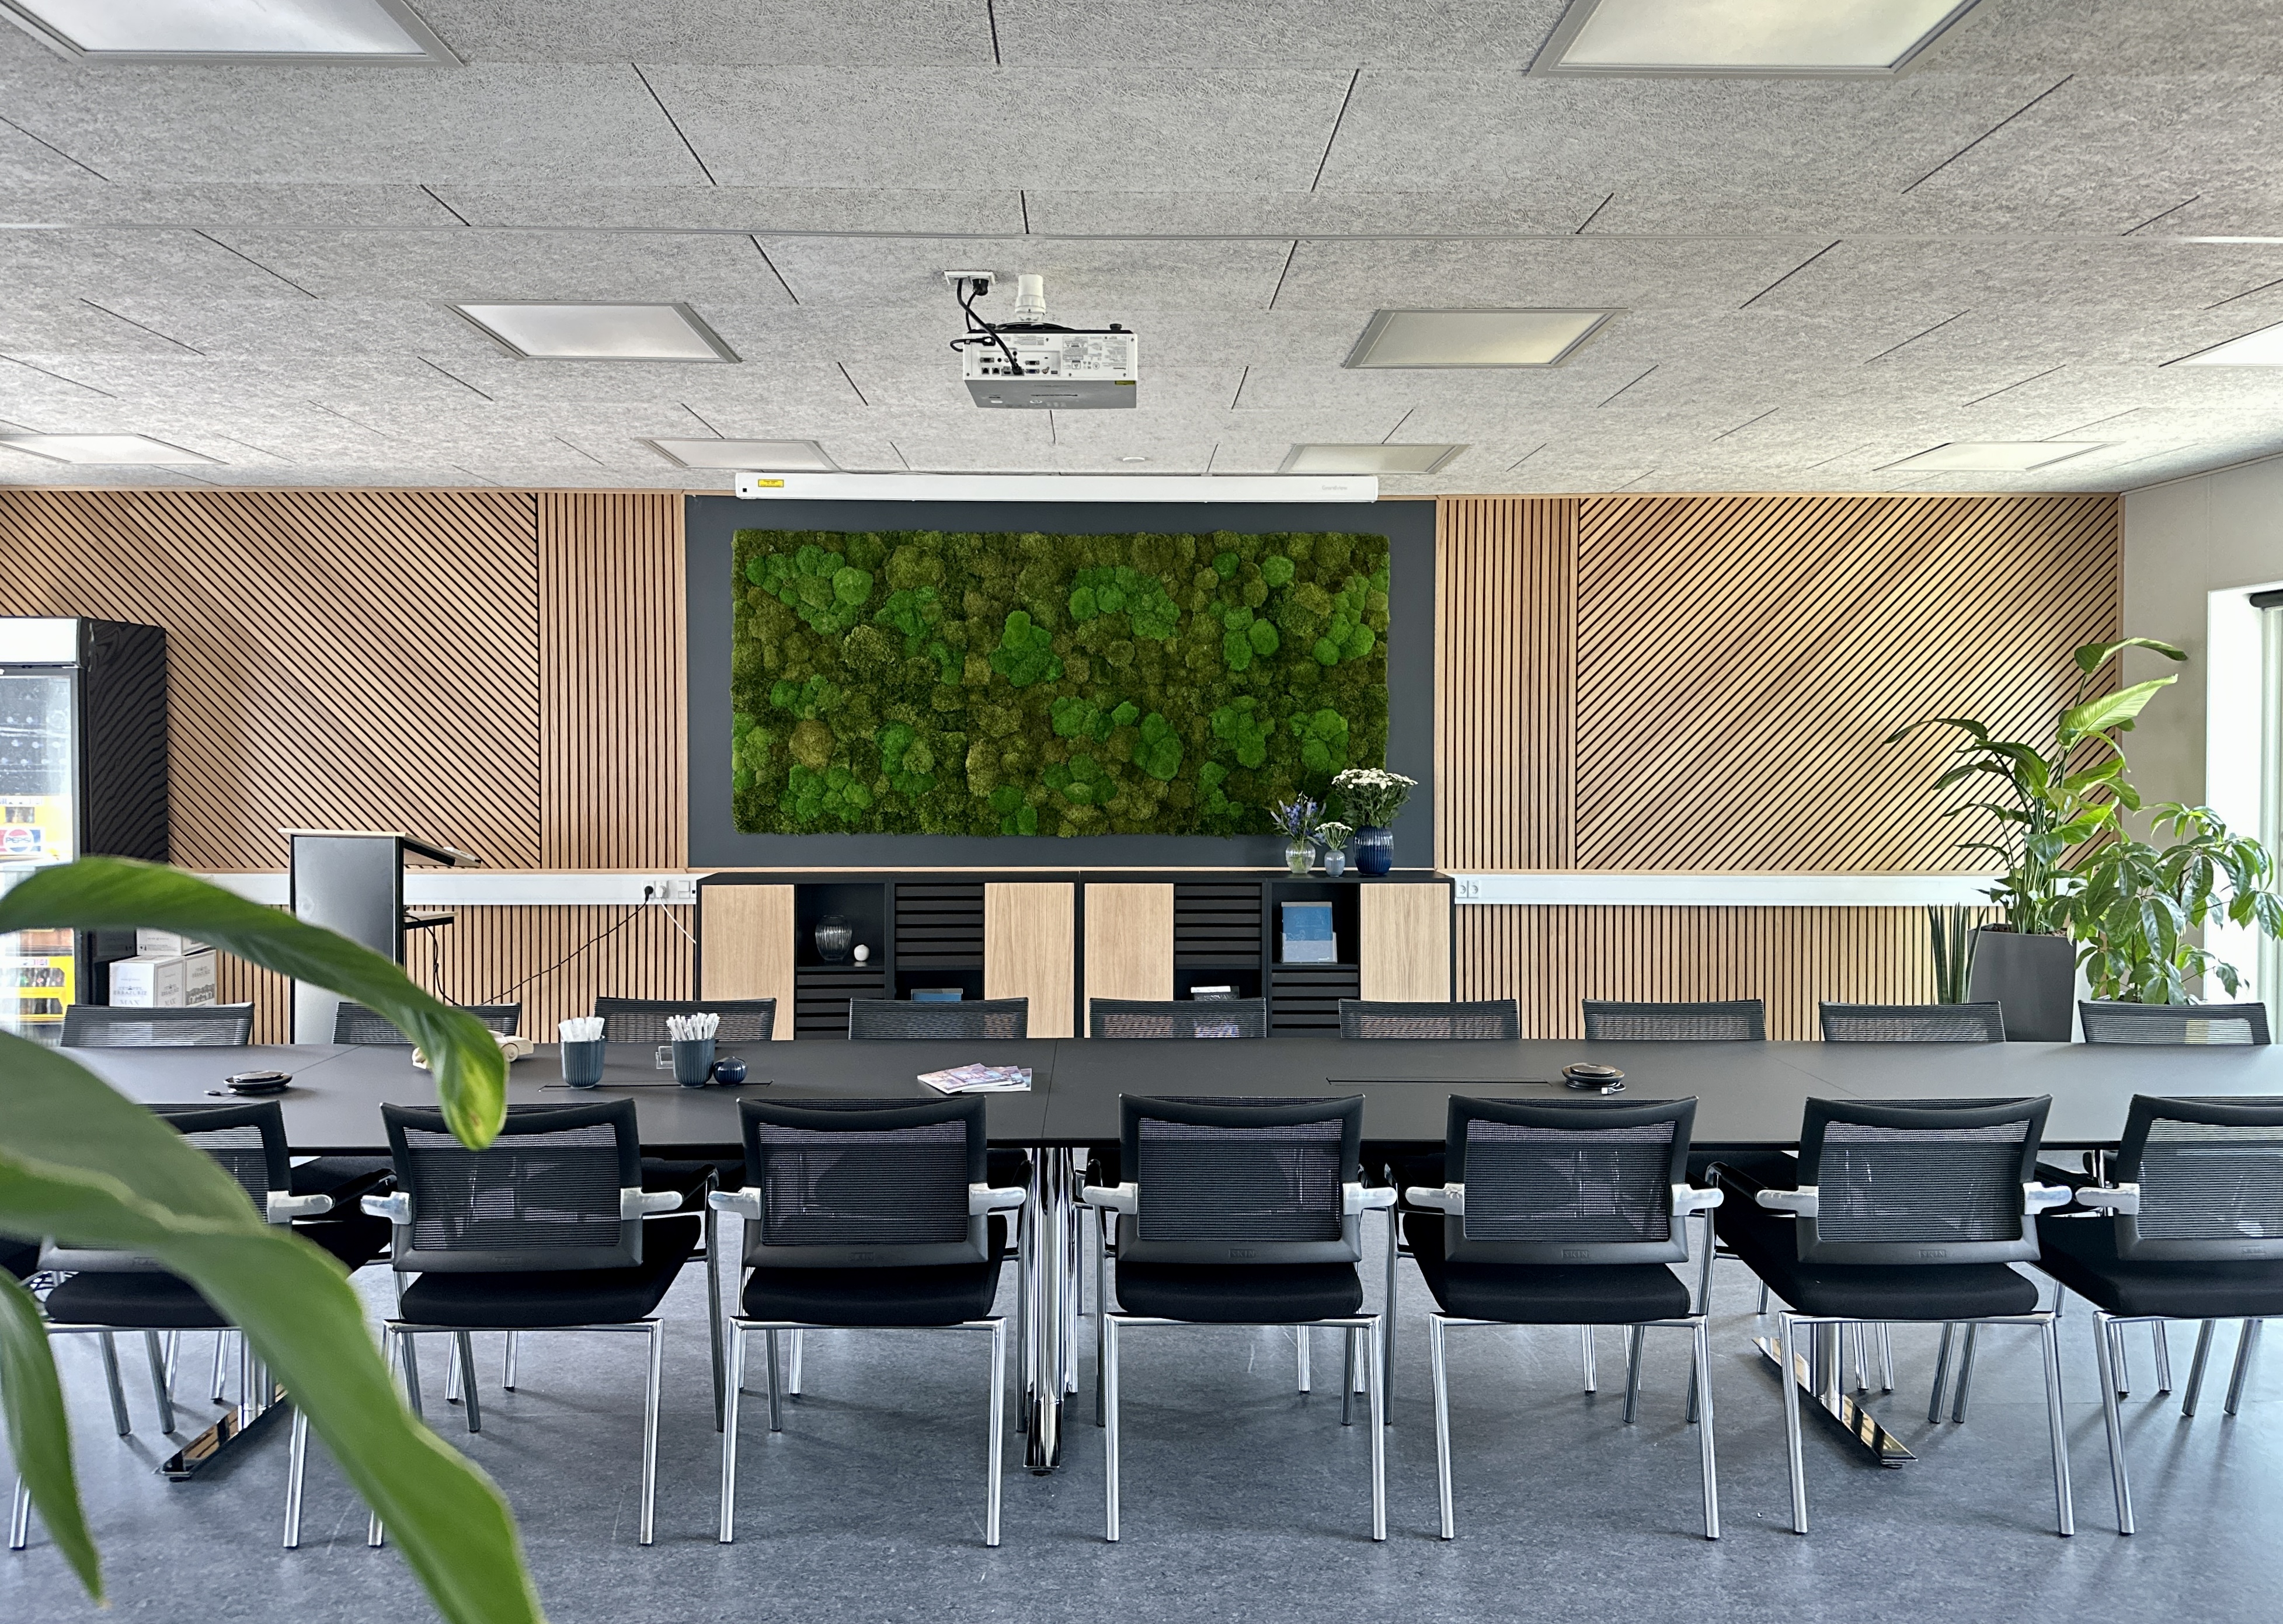 En kontorarbejdsplads med lyse møbler og grønne planter giver den bedste indretning